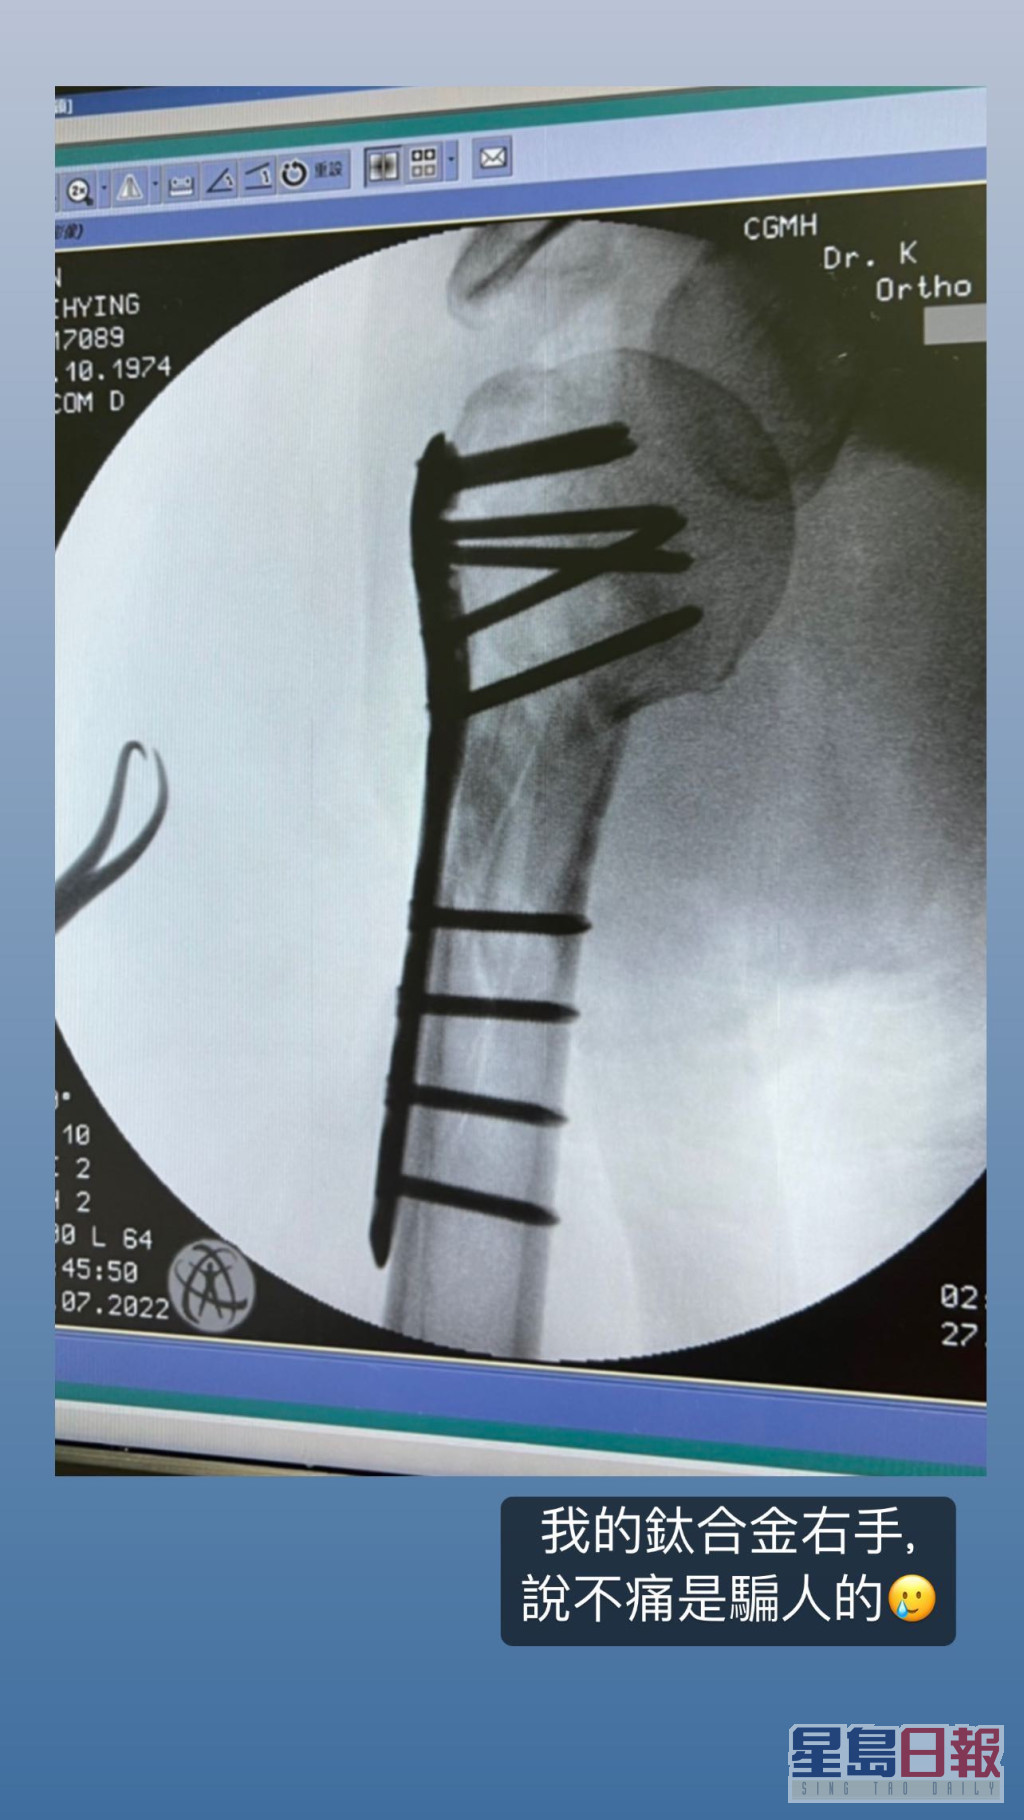 林志穎公開右臂的X光相，見到一排鋼釘及鋼板。